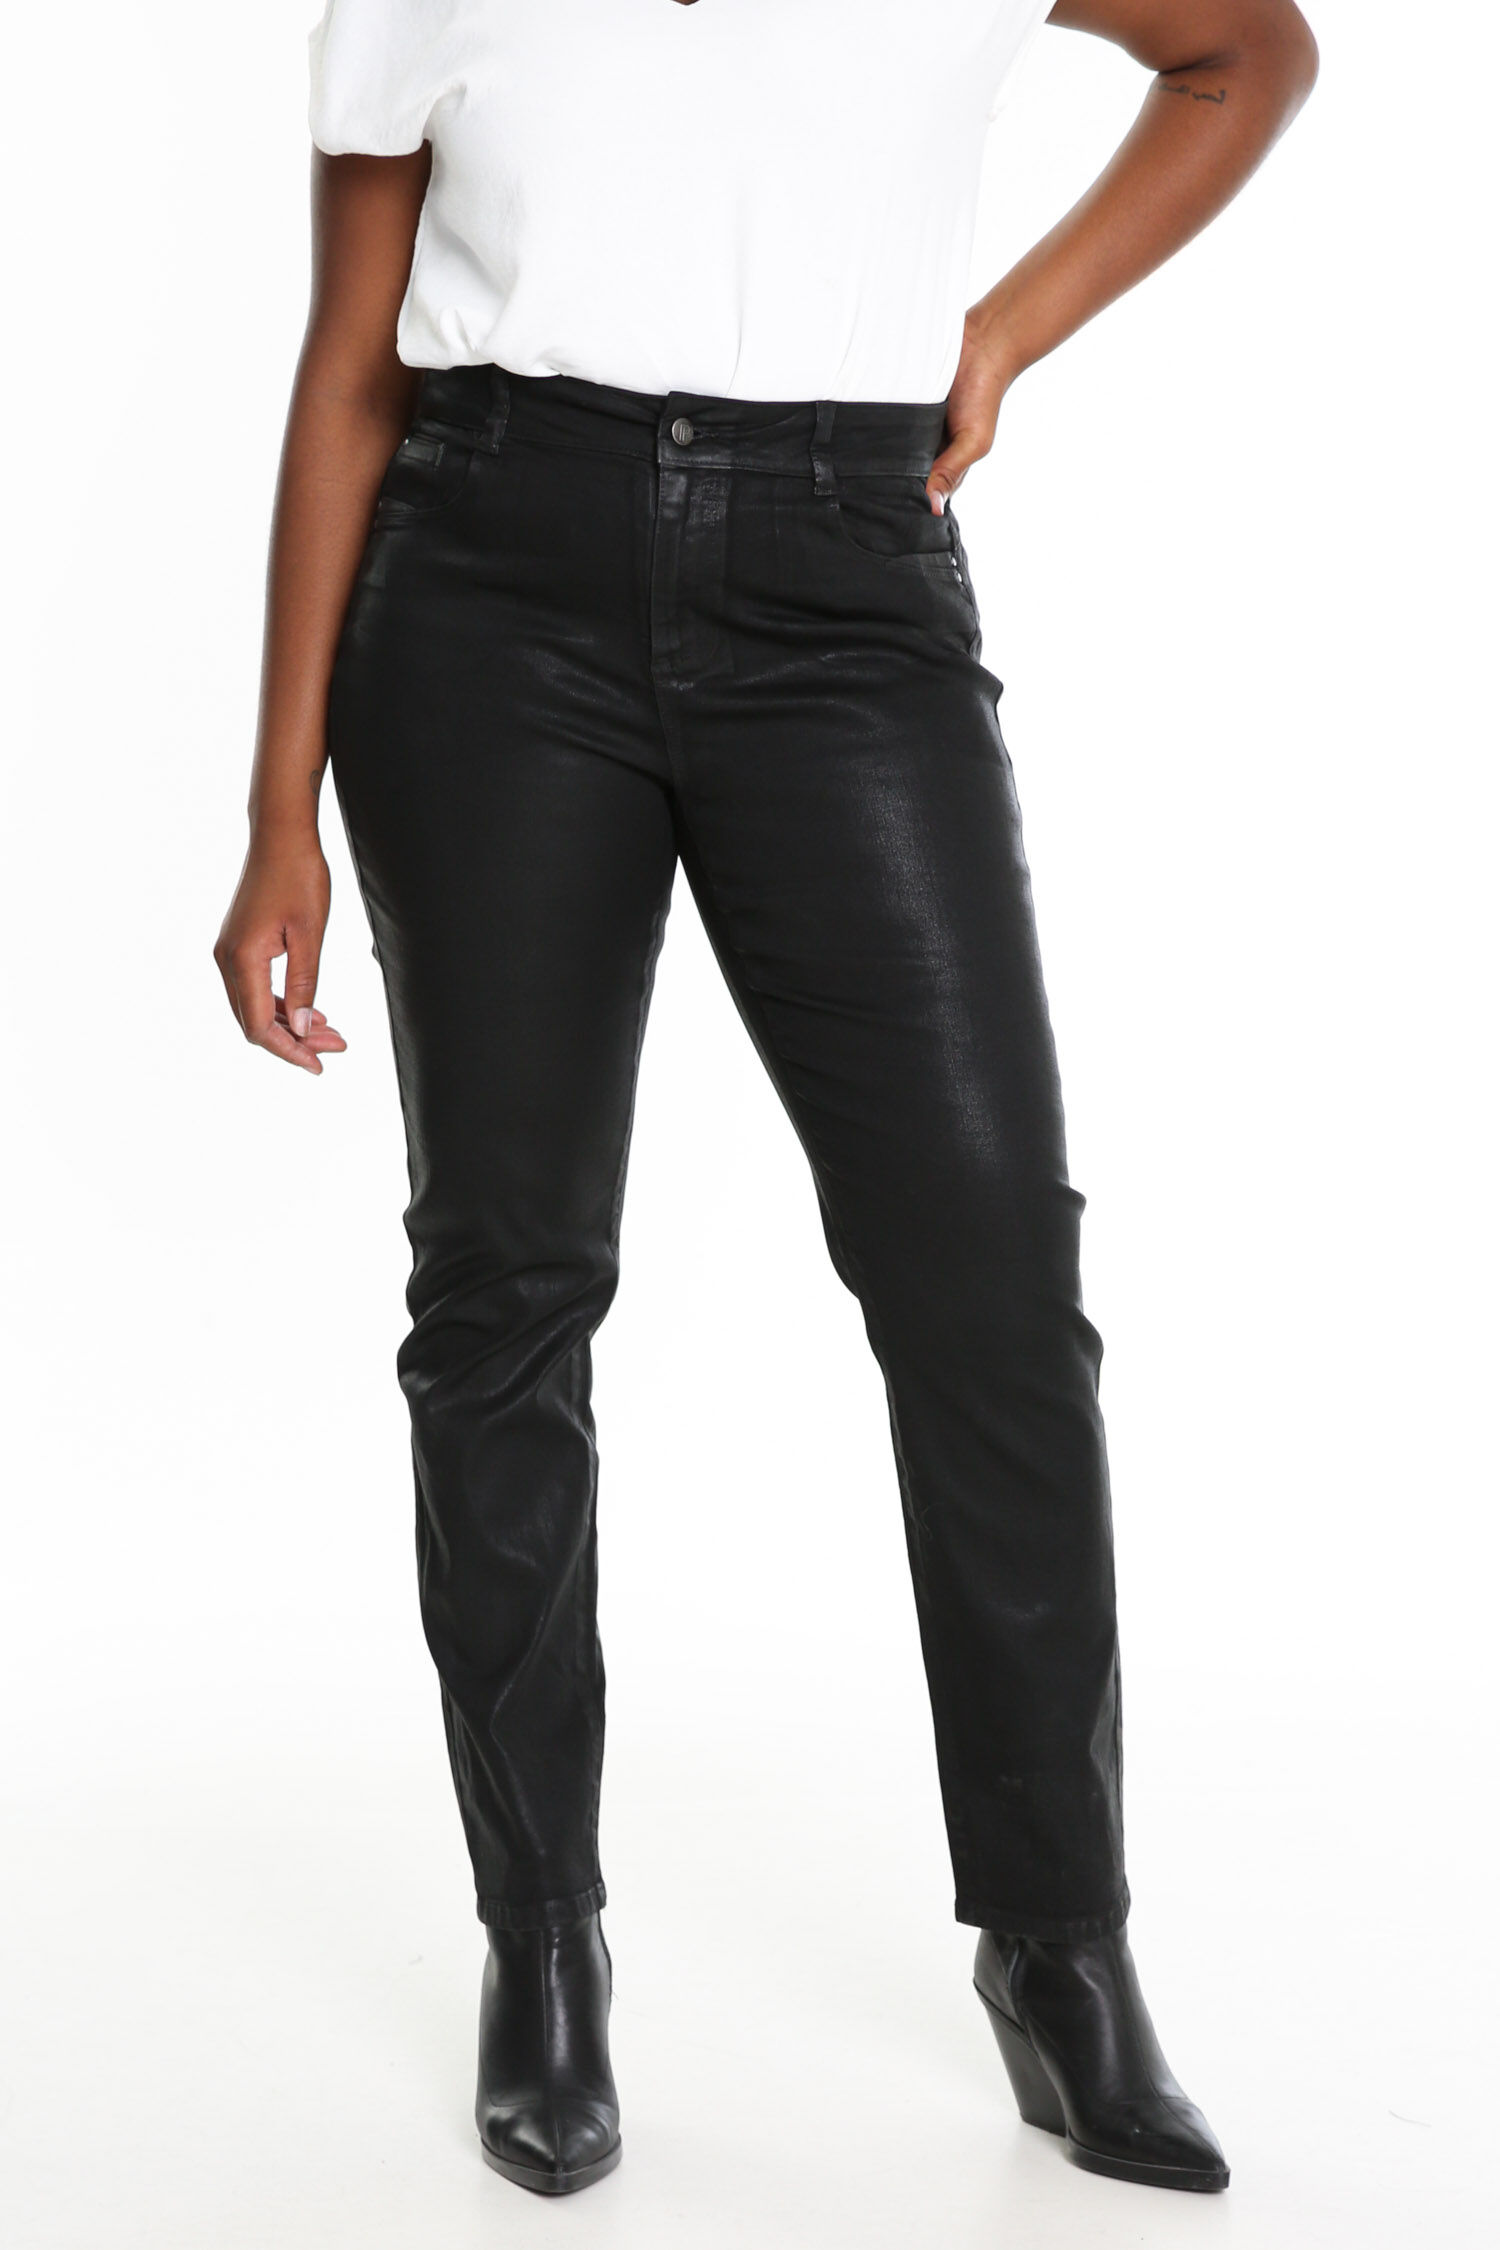 Mode Broeken Stoffen broeken H&M Stoffen broek zwart zakelijke stijl 